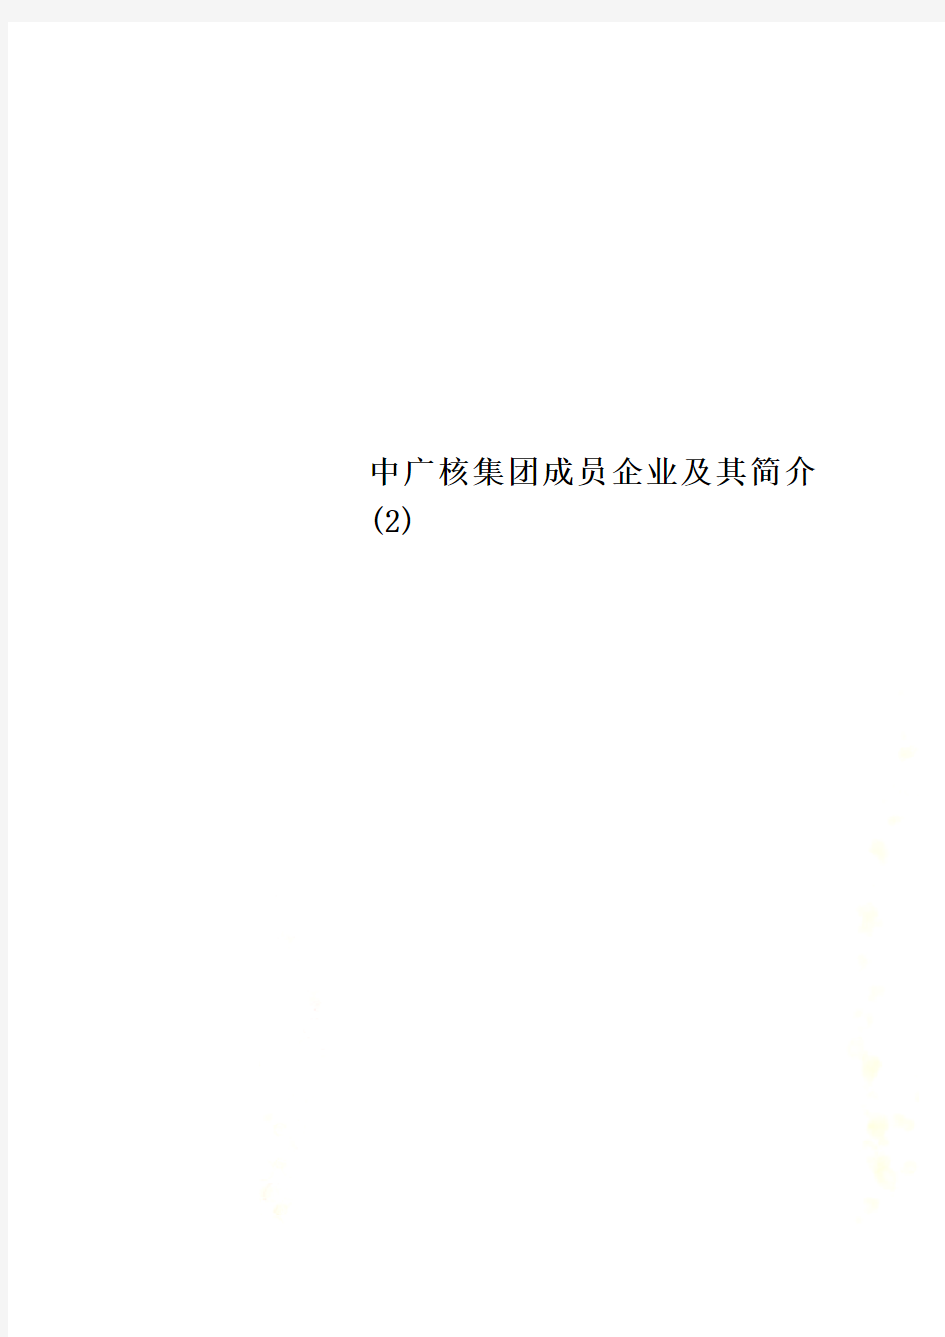 中广核集团成员企业及其简介 (2) 0528